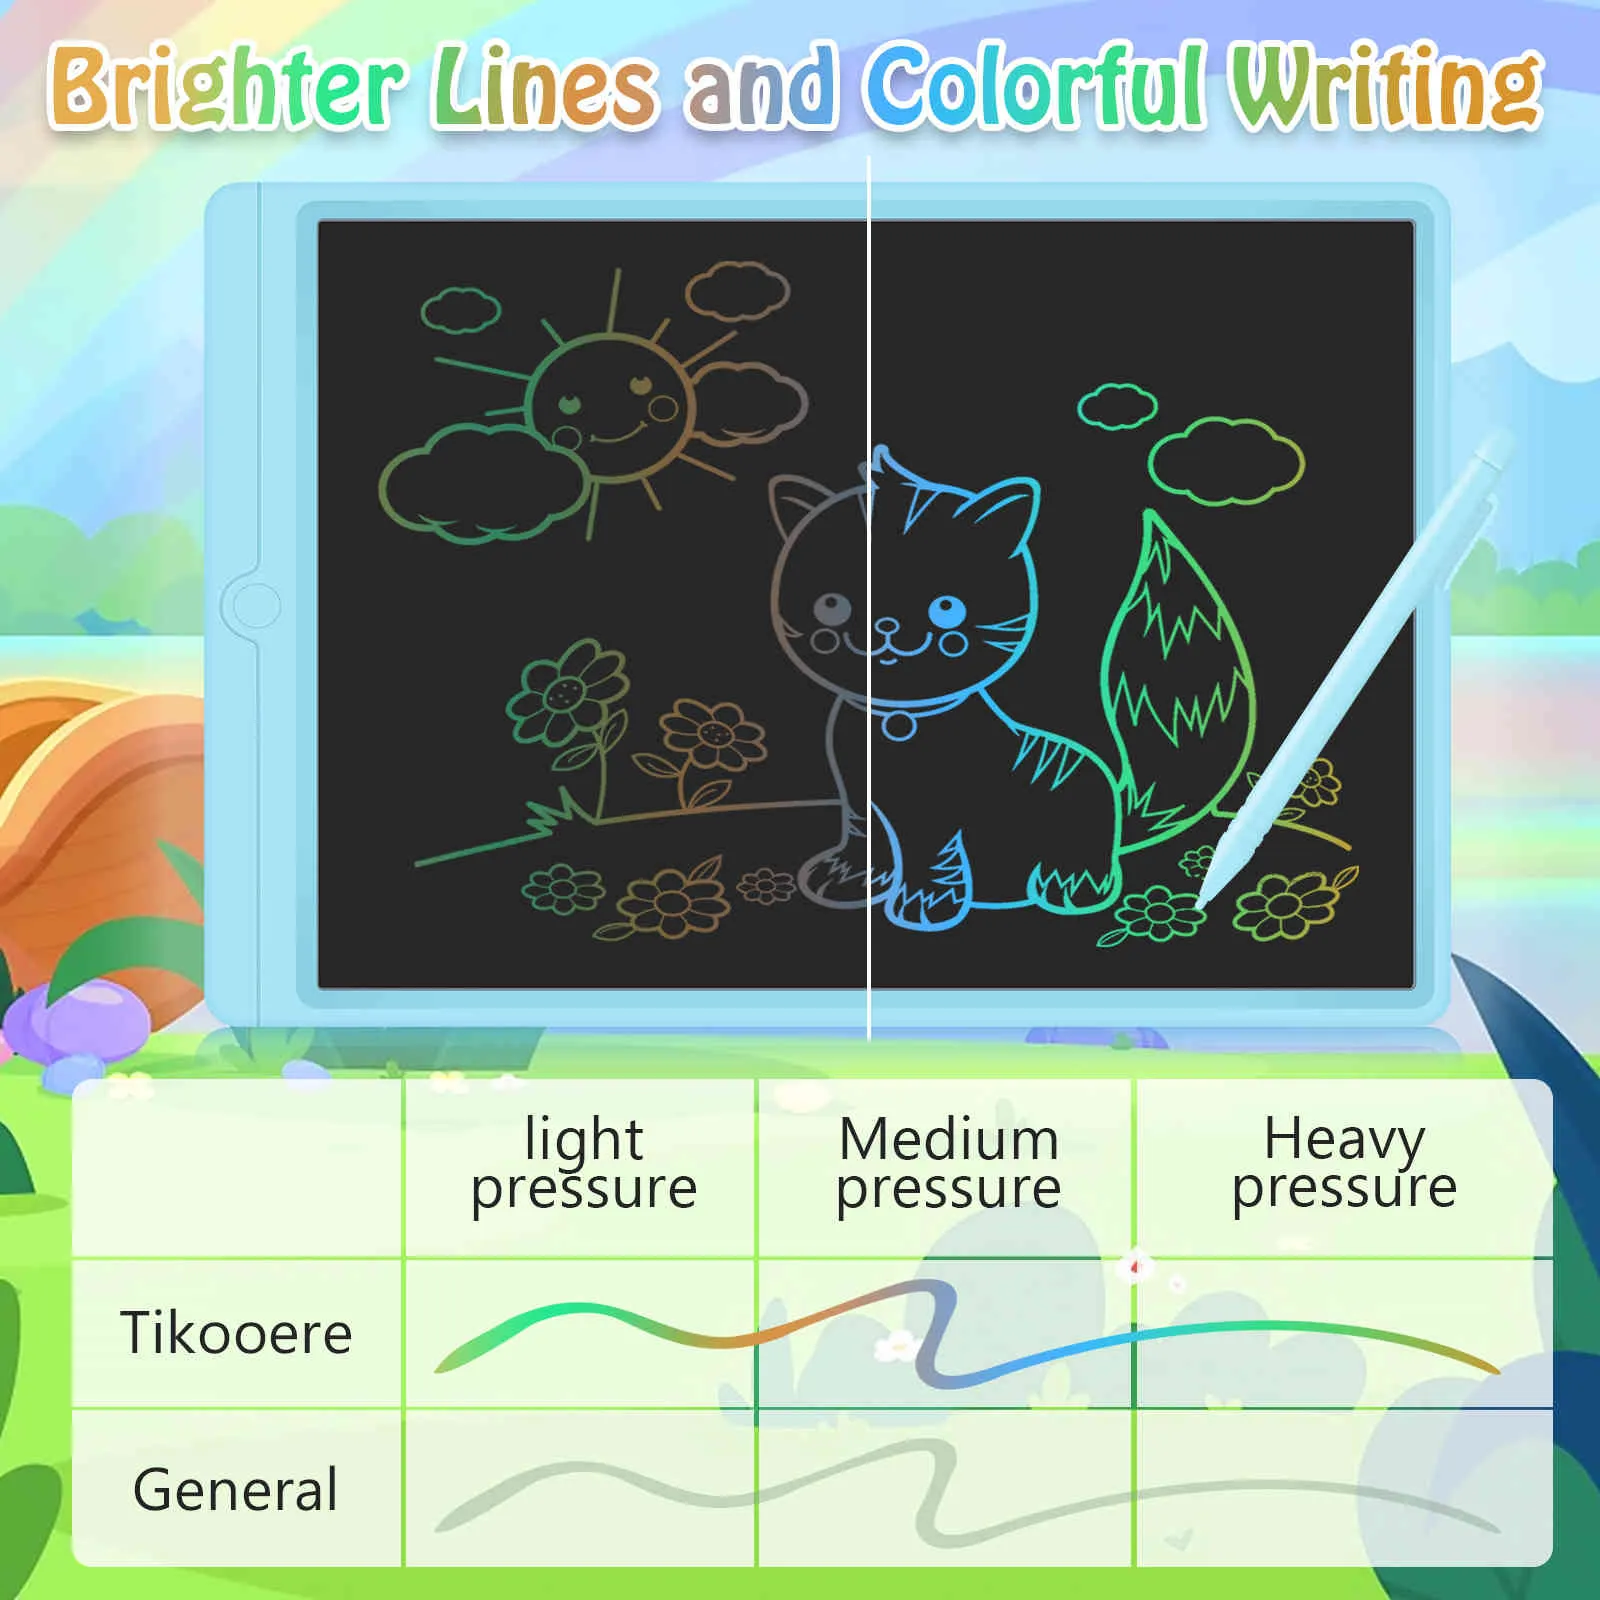 13.5 pouces LCD Tablette Tablette Digital Electronic Tableau de dessin Doodle Pad avec stylet cadeau cadeau enfants